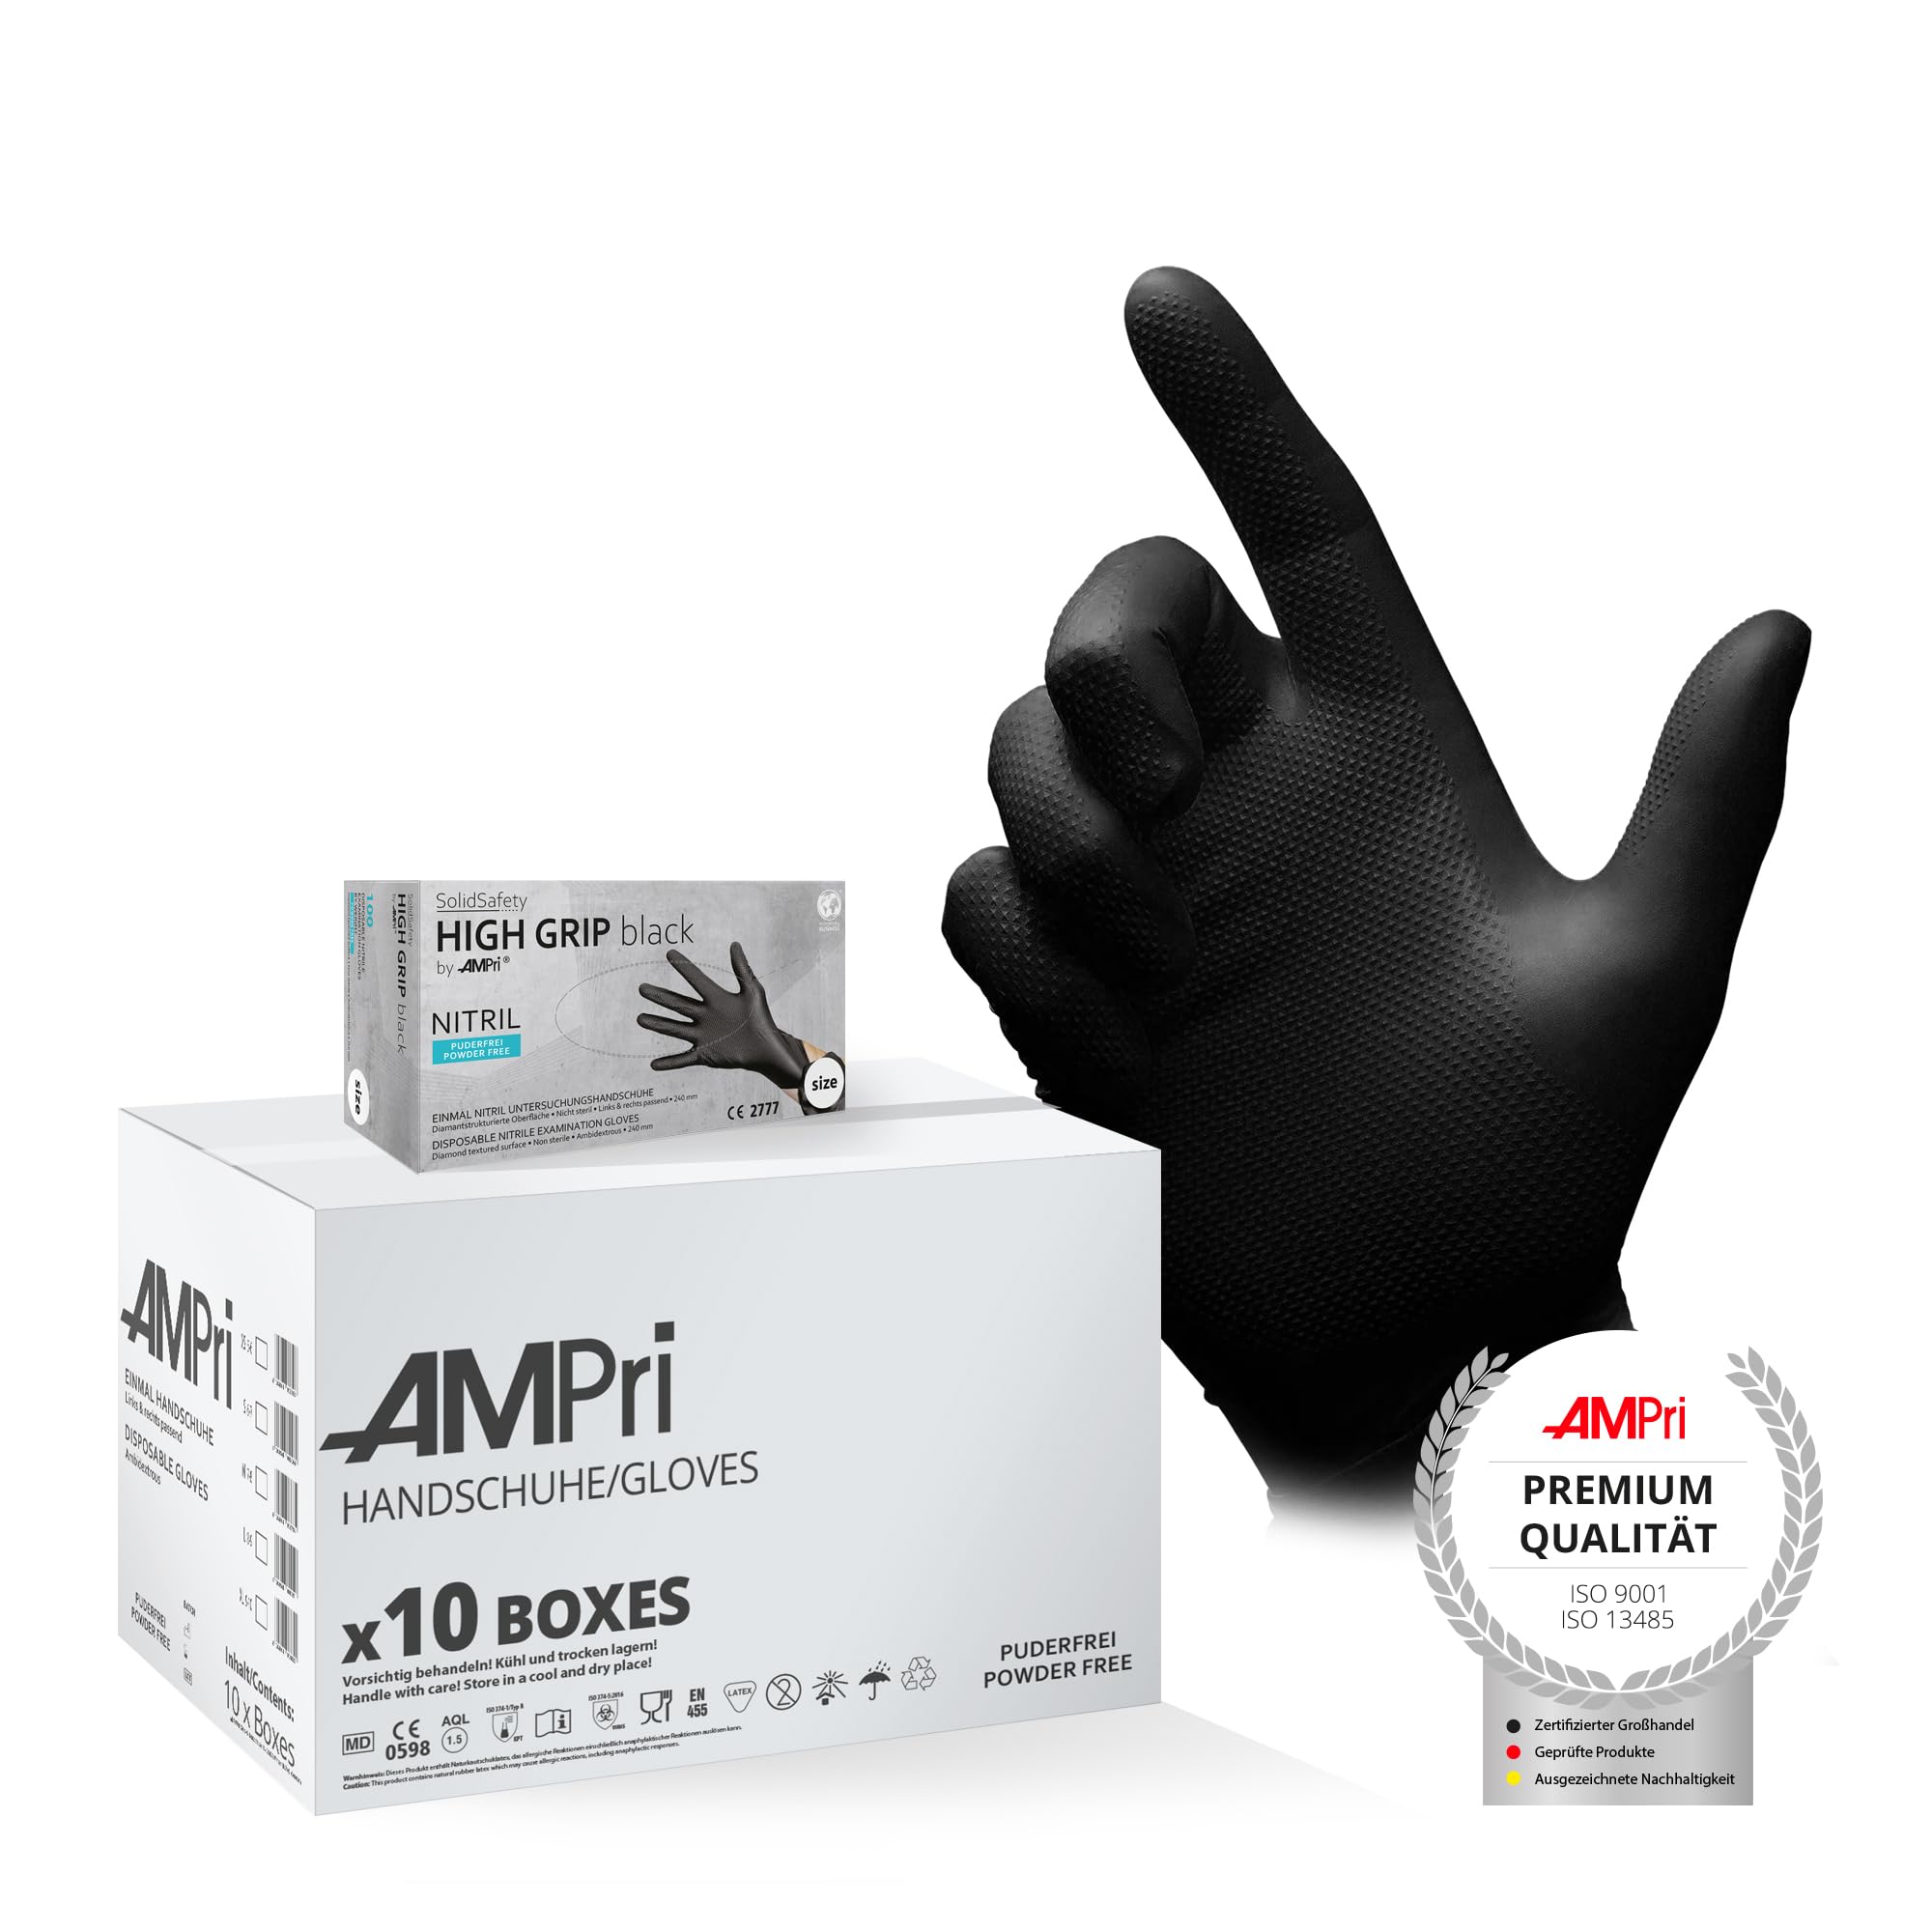 AMPri High Grip Einmalhandschuh aus Nitril, 10 Box a 100 Stk, Größe L, schwarz, SolidSafety: extra griffiger und chemikalienbeständiger Arbeitsschutzhandschuh in den Größen S, M, L, XL, XXL